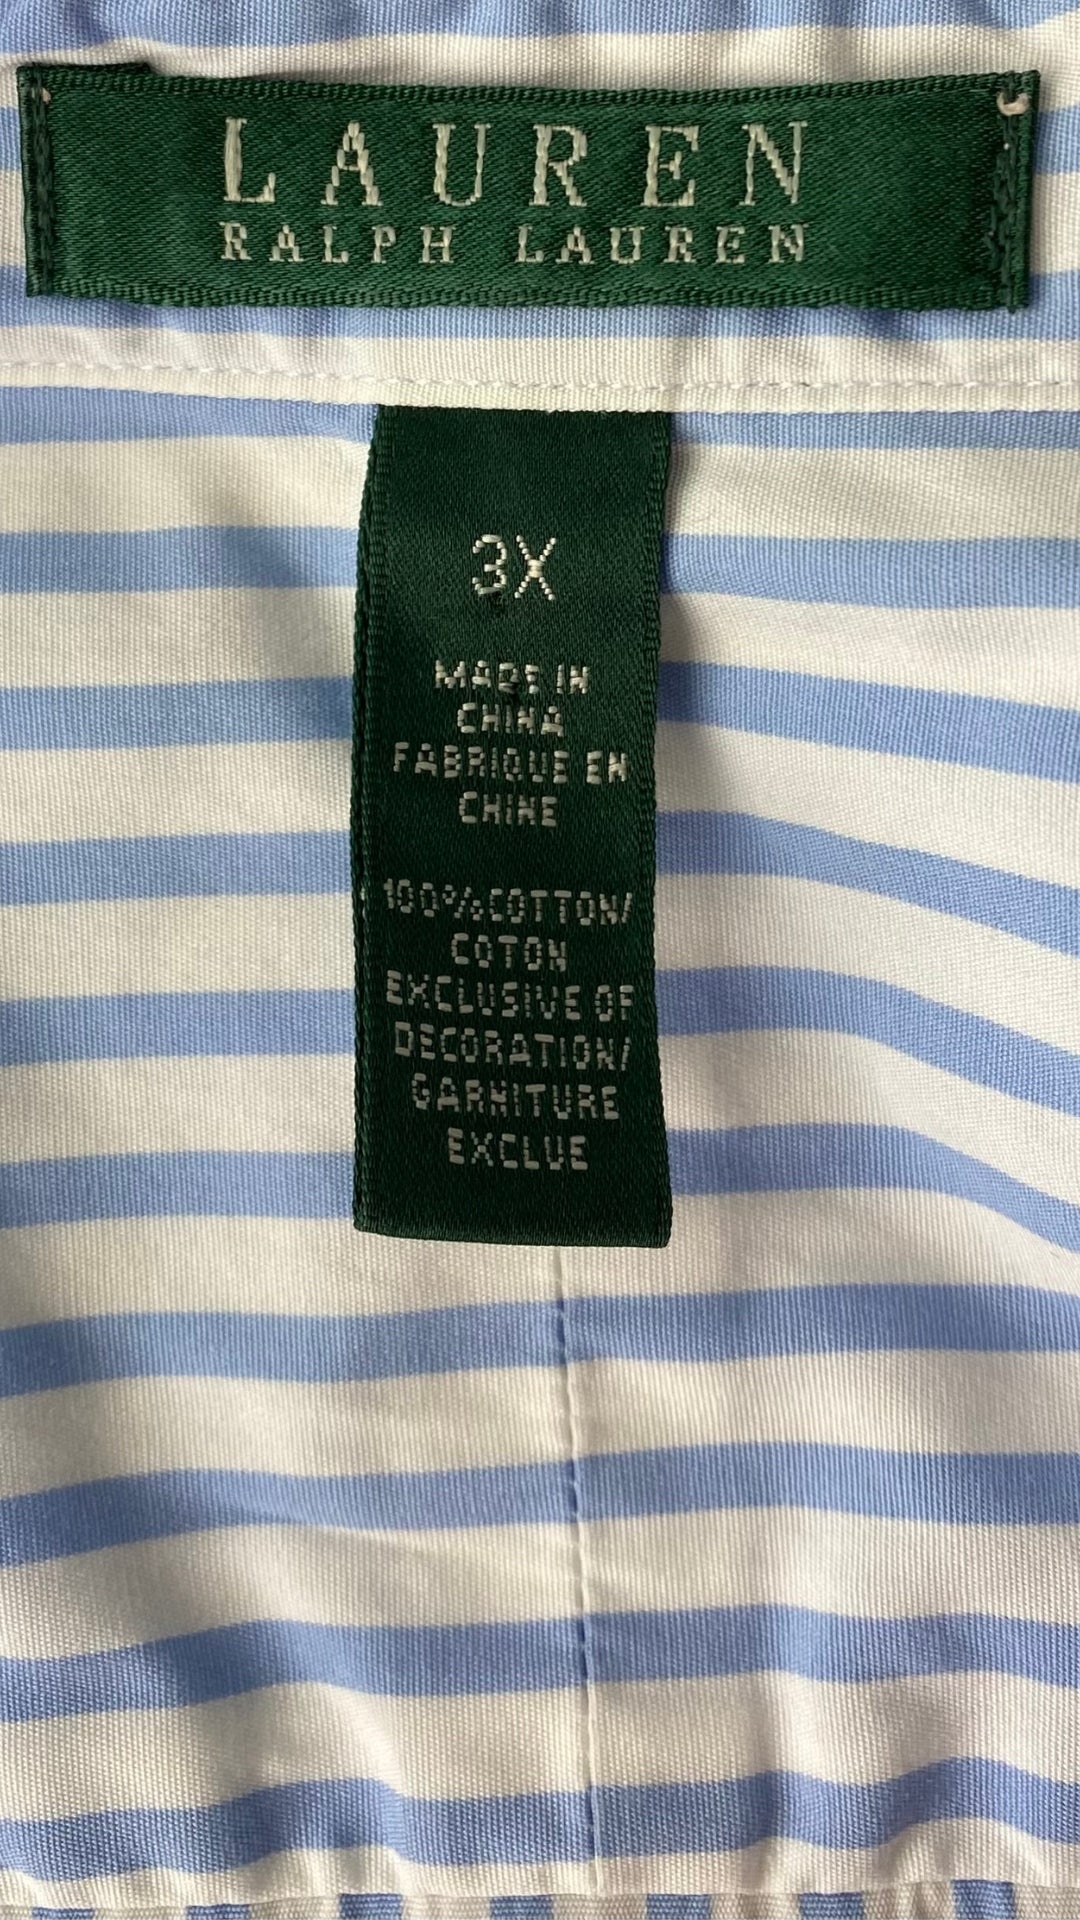 Chemisier à rayures en coton Lauren Ralph Lauren, taille 3X. Vue de l'étiquette de marque, taille et composition.